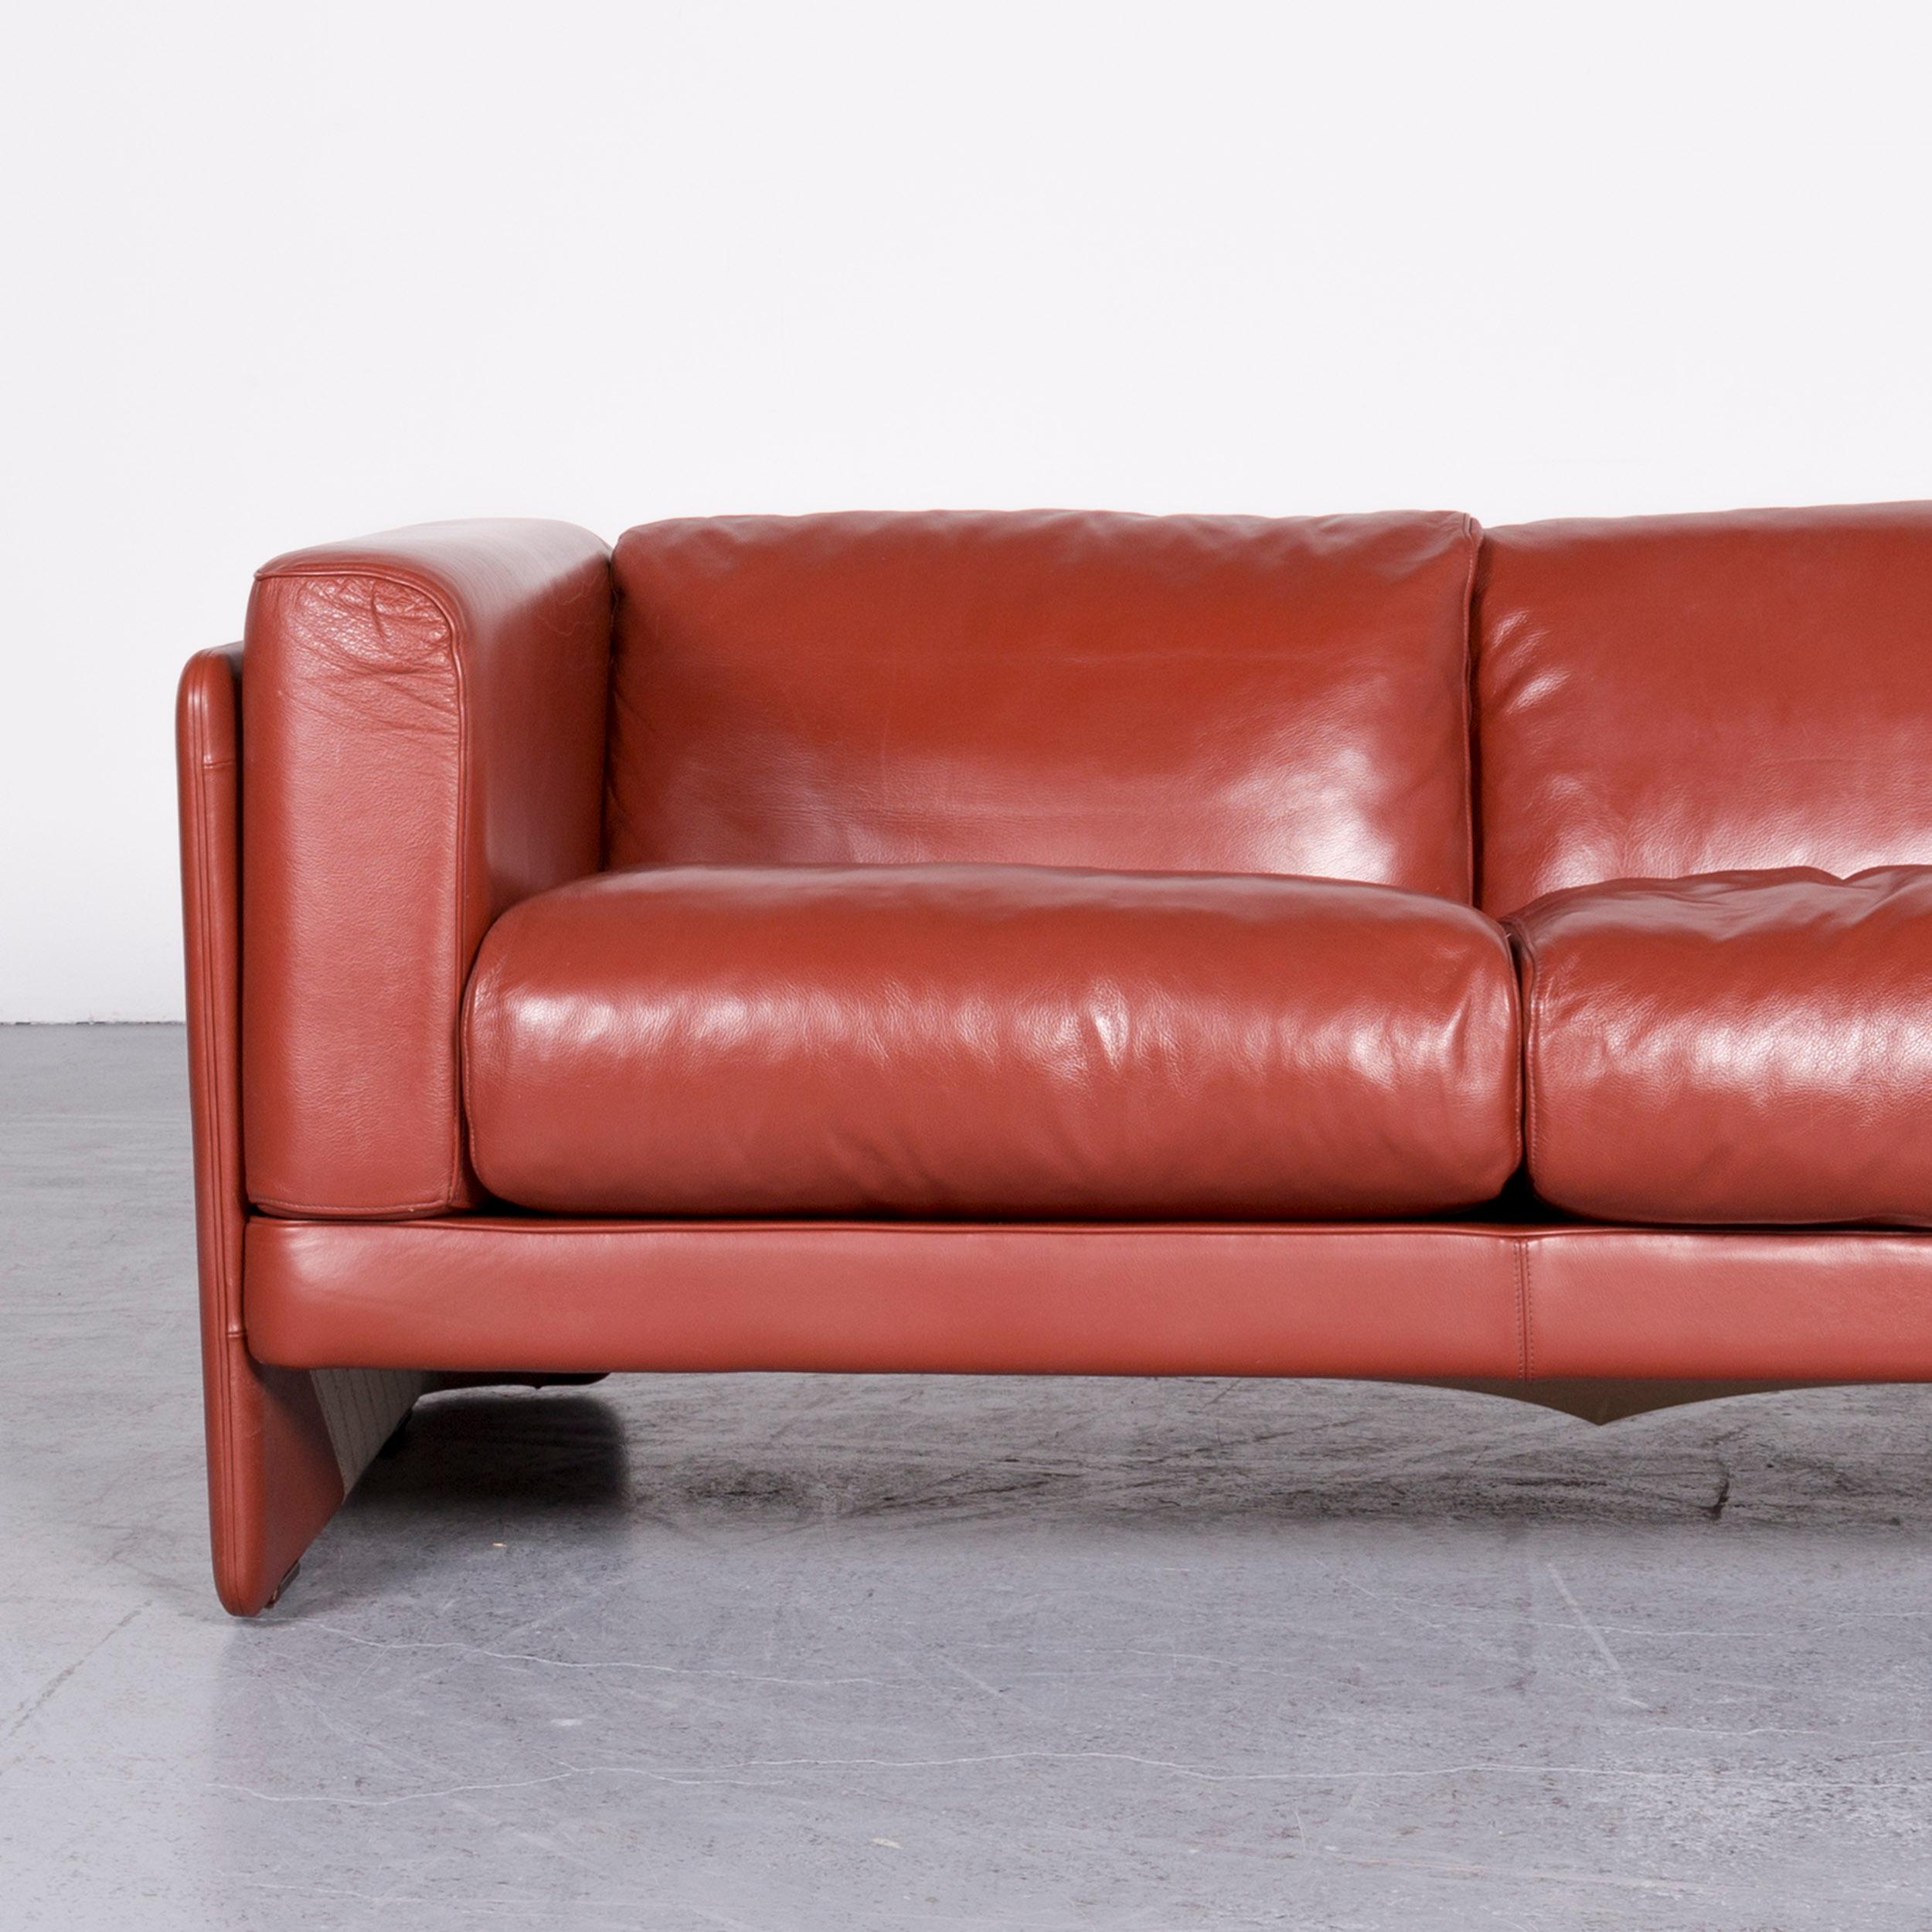 Poltrona Frau Le Chapanelle Designer Leather Sofa Orange by Tito Agnoli In Good Condition For Sale In Cologne, DE